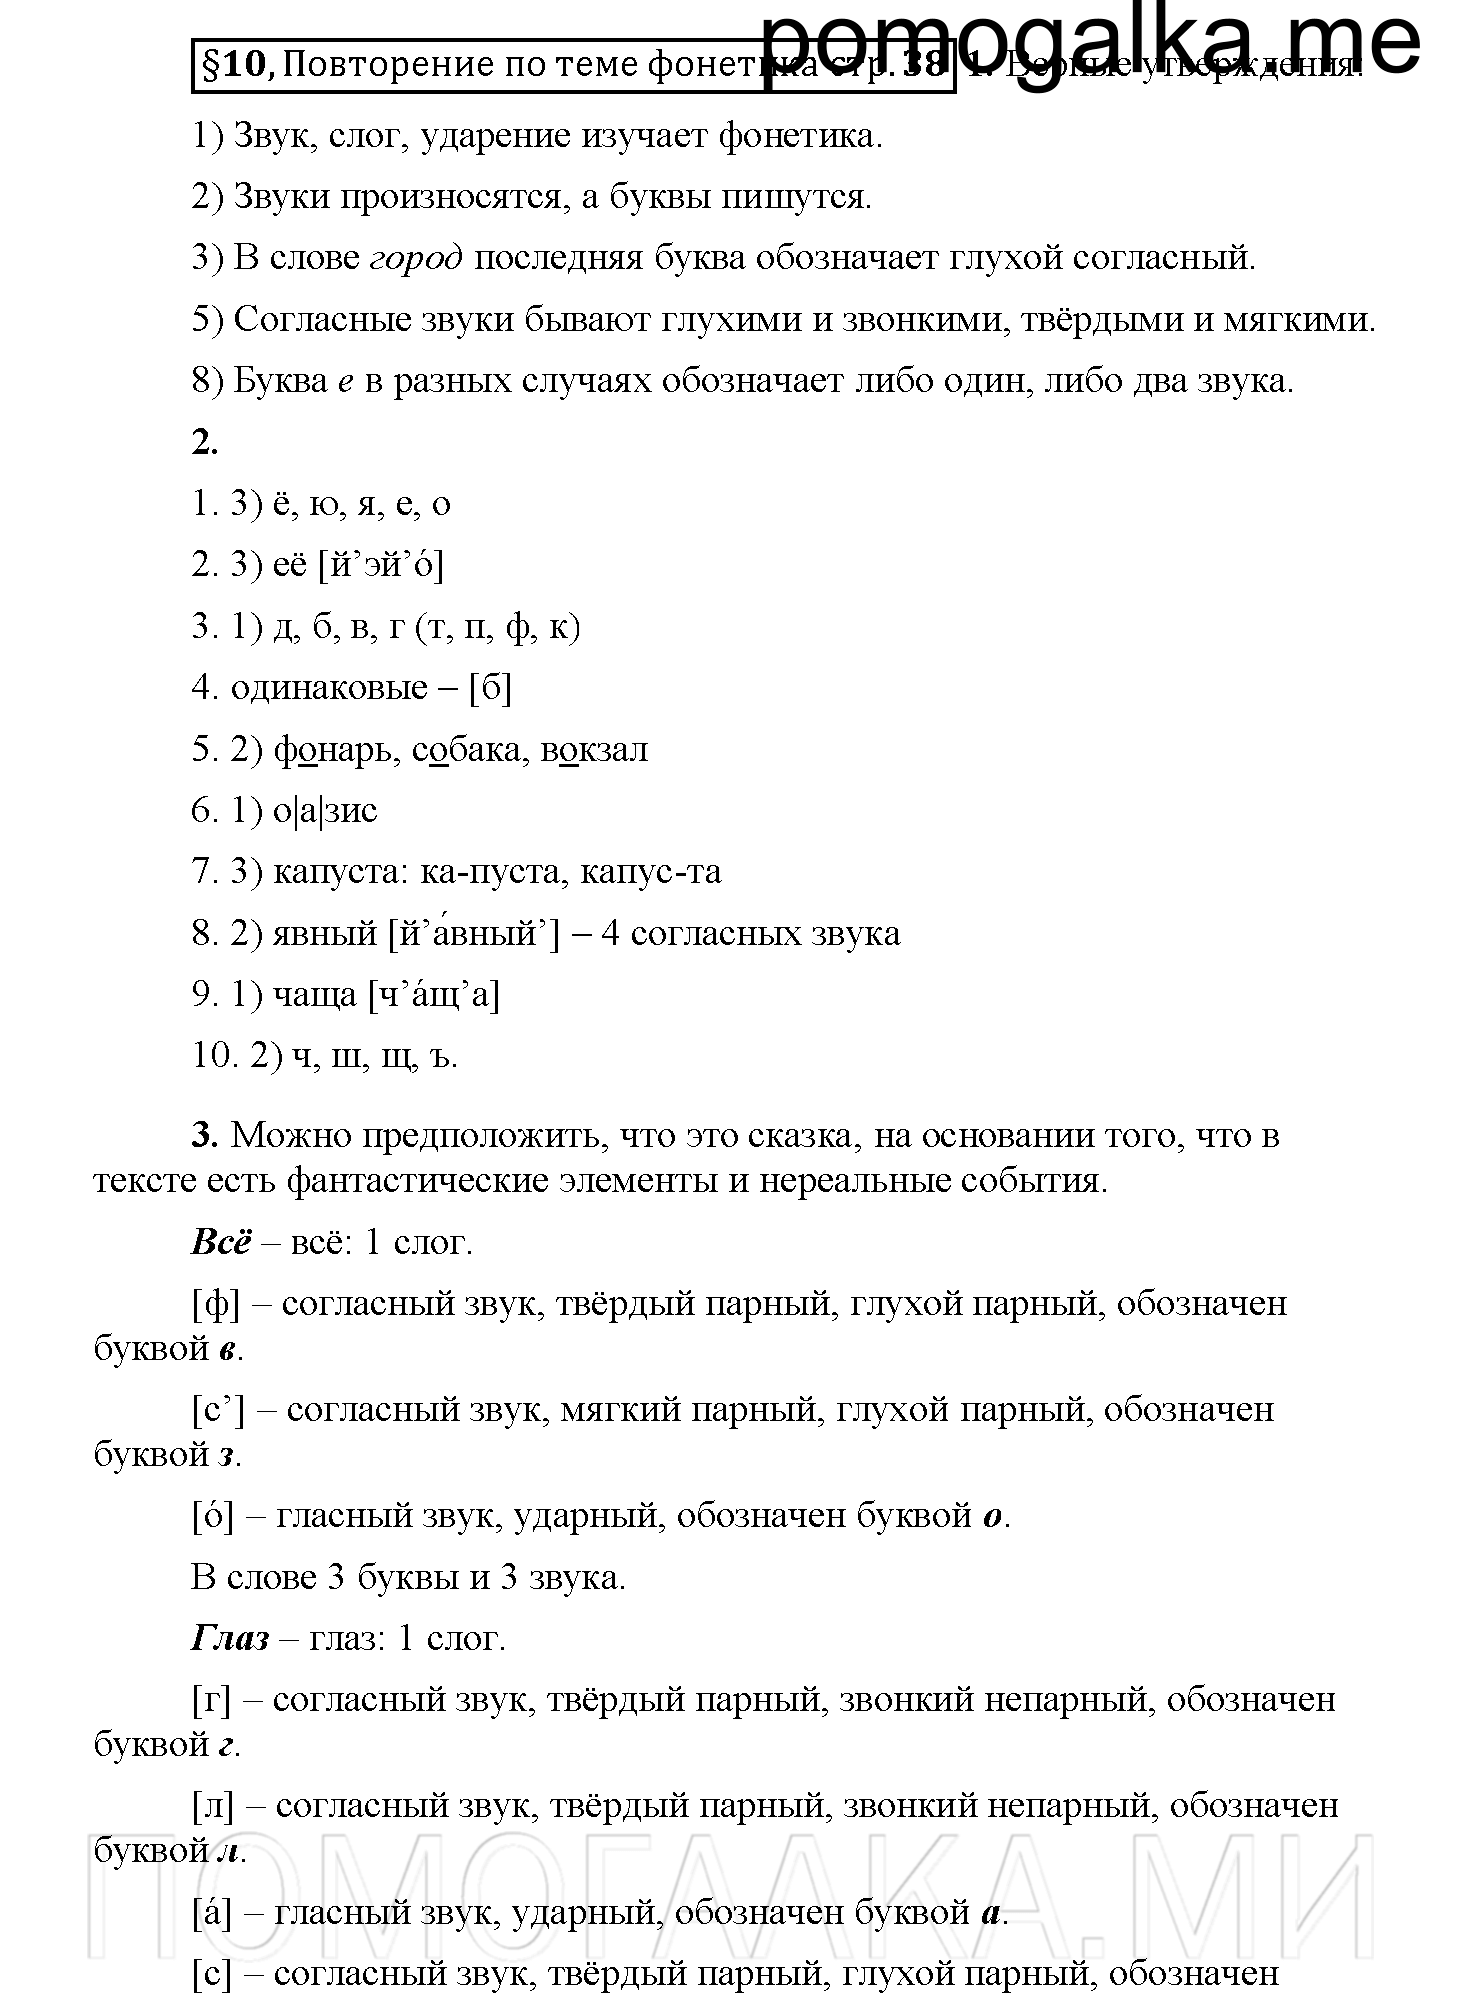 часть 1 страница 38 вопросы к §10 русский язык 5 класс Рыбченкова учебник 2018 год